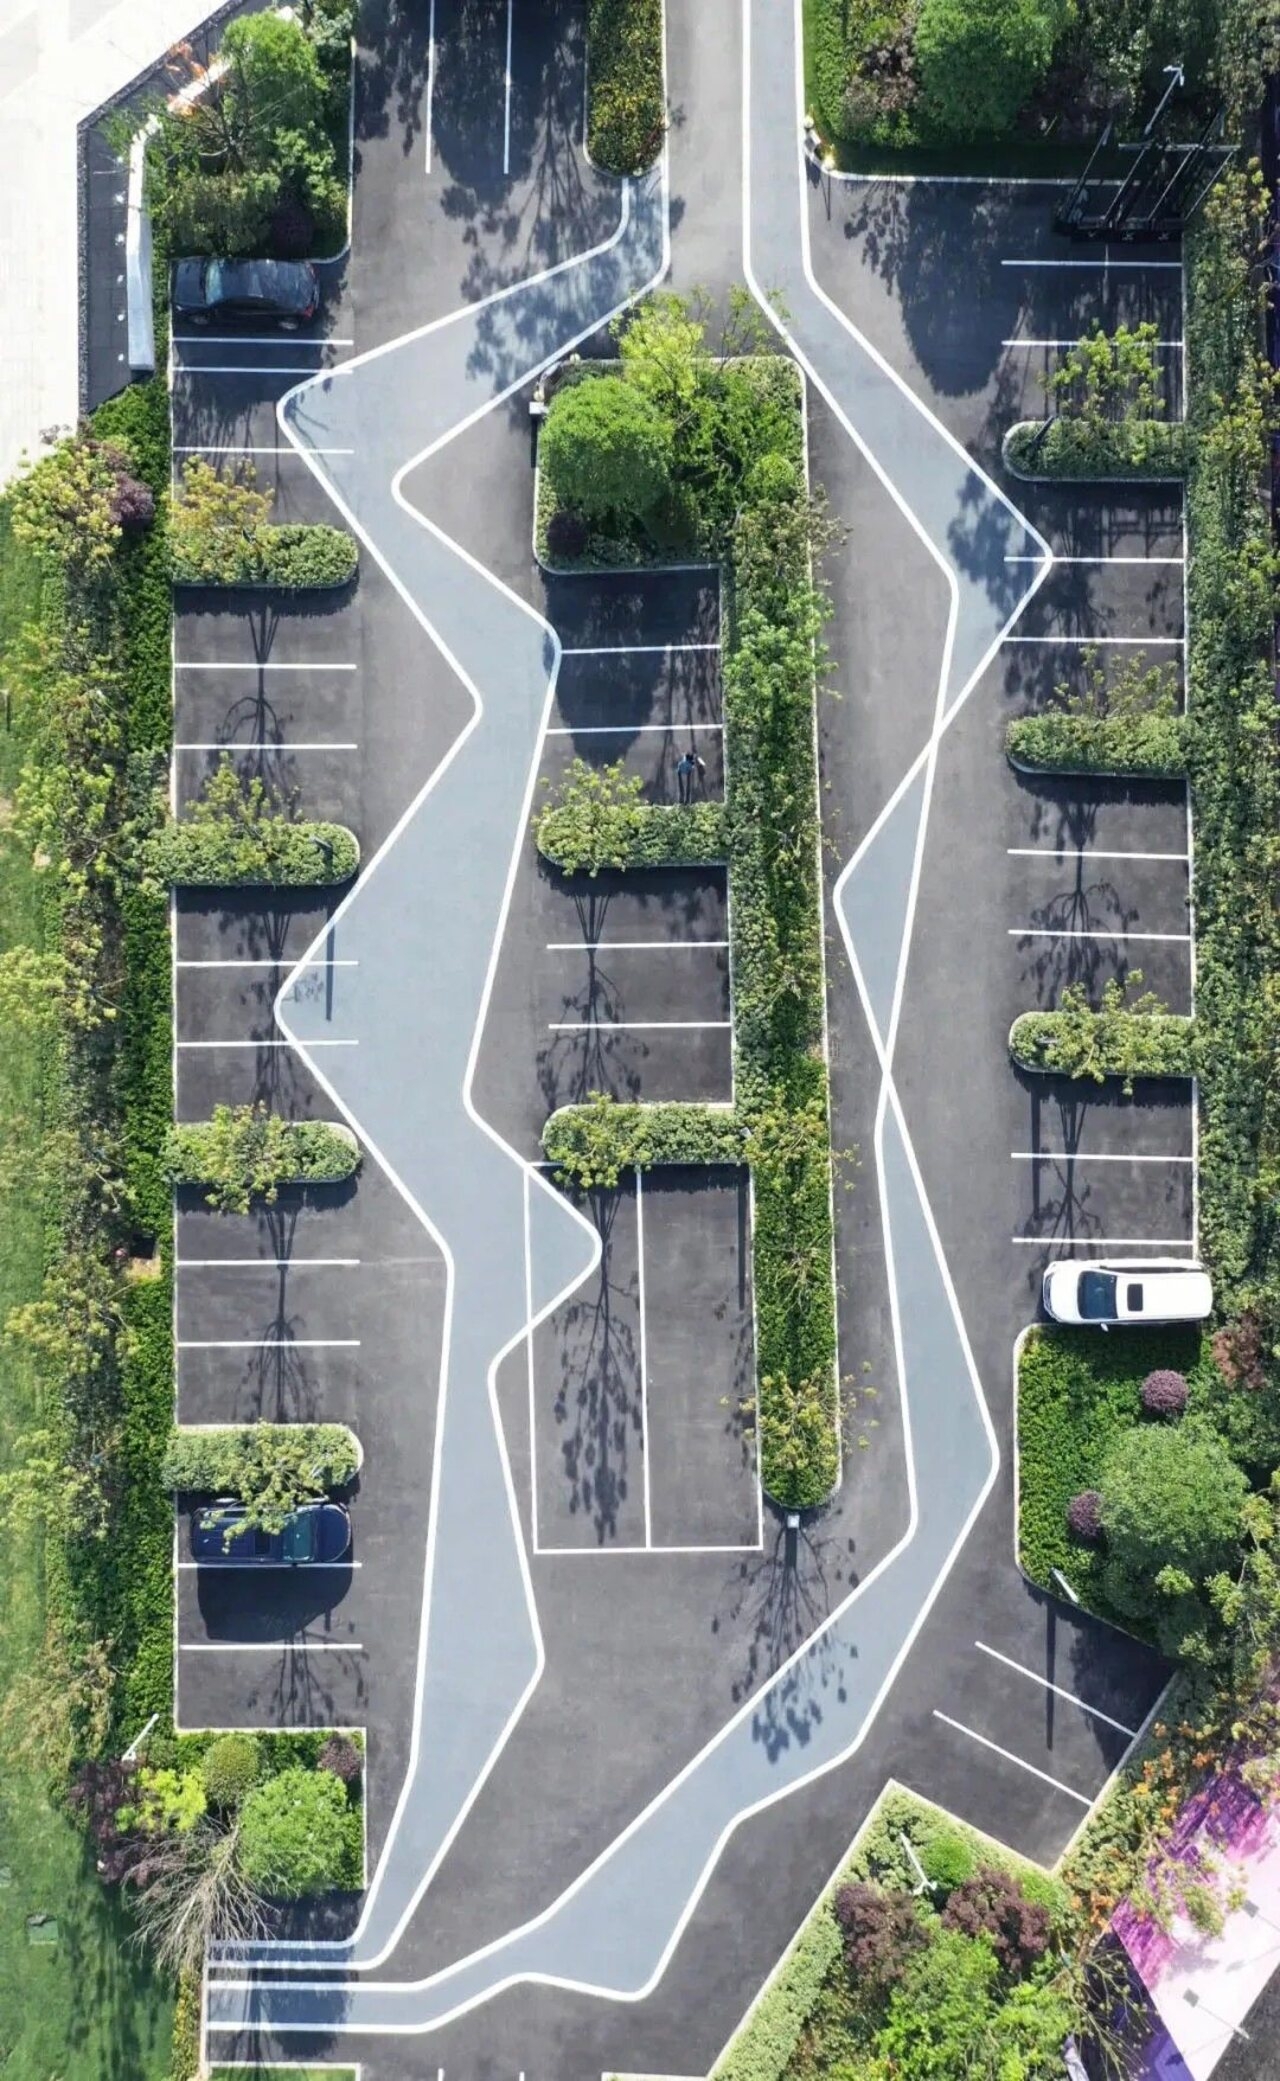 Alberi e piante: un esempio di parcheggio paesaggistico proveniente dalla Cina